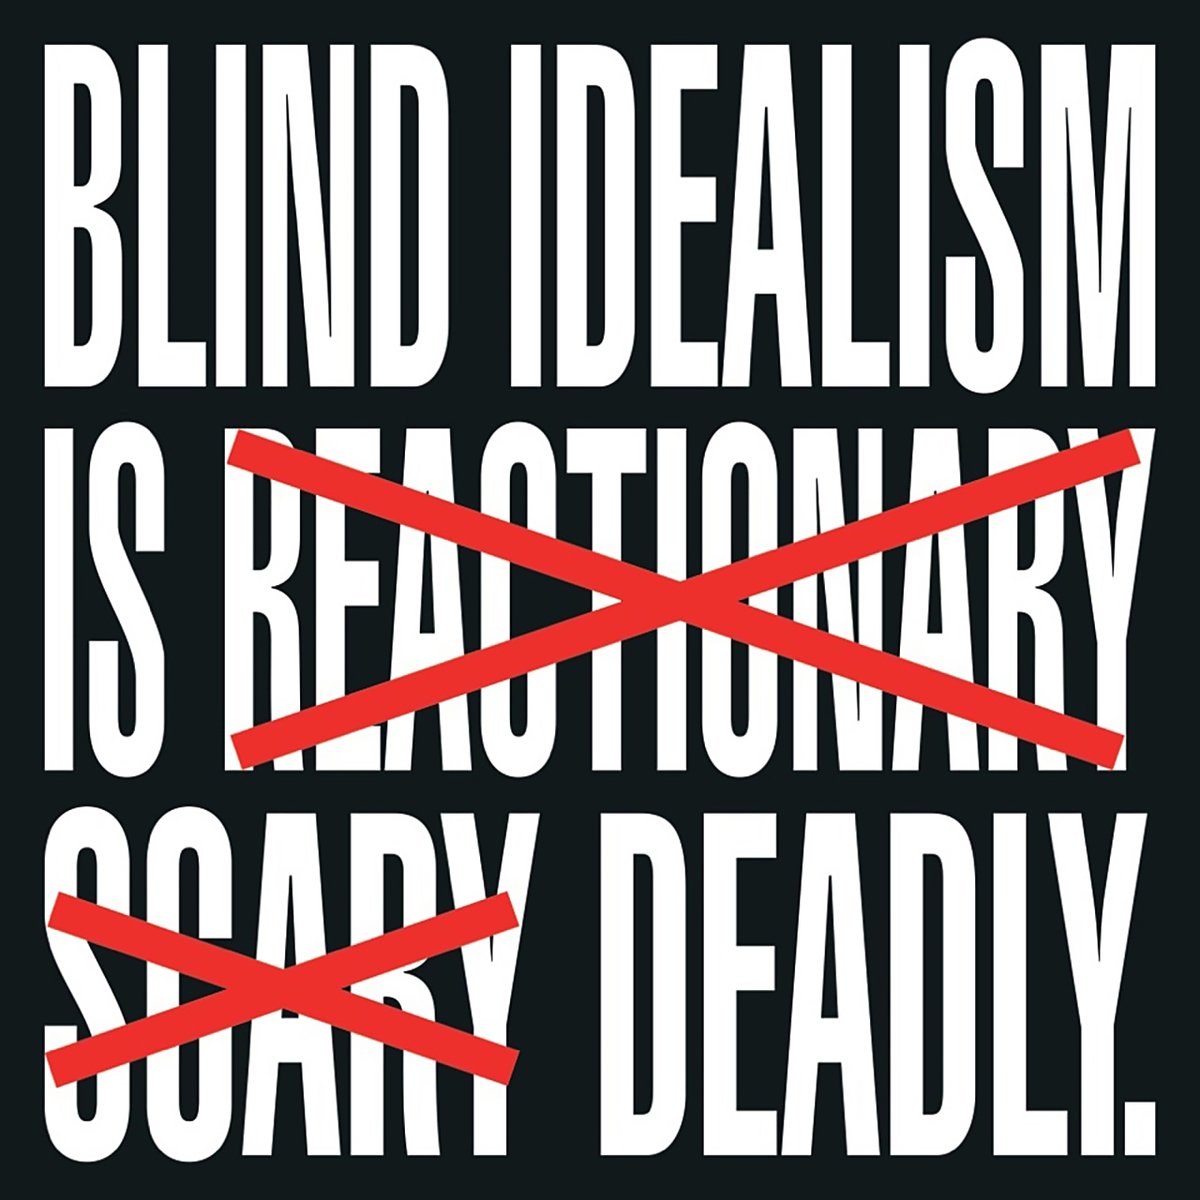 by Barbara Kruger 
Blindly! 

#Blindly #Blind #Blindidealism #idealism #Gazza #Israel #Palestine #kapitalizm #capitalism #system #TheSystem #düzen #siyaset Binyamin Netanyahu #NatanyahuCriminal #Natanyahu